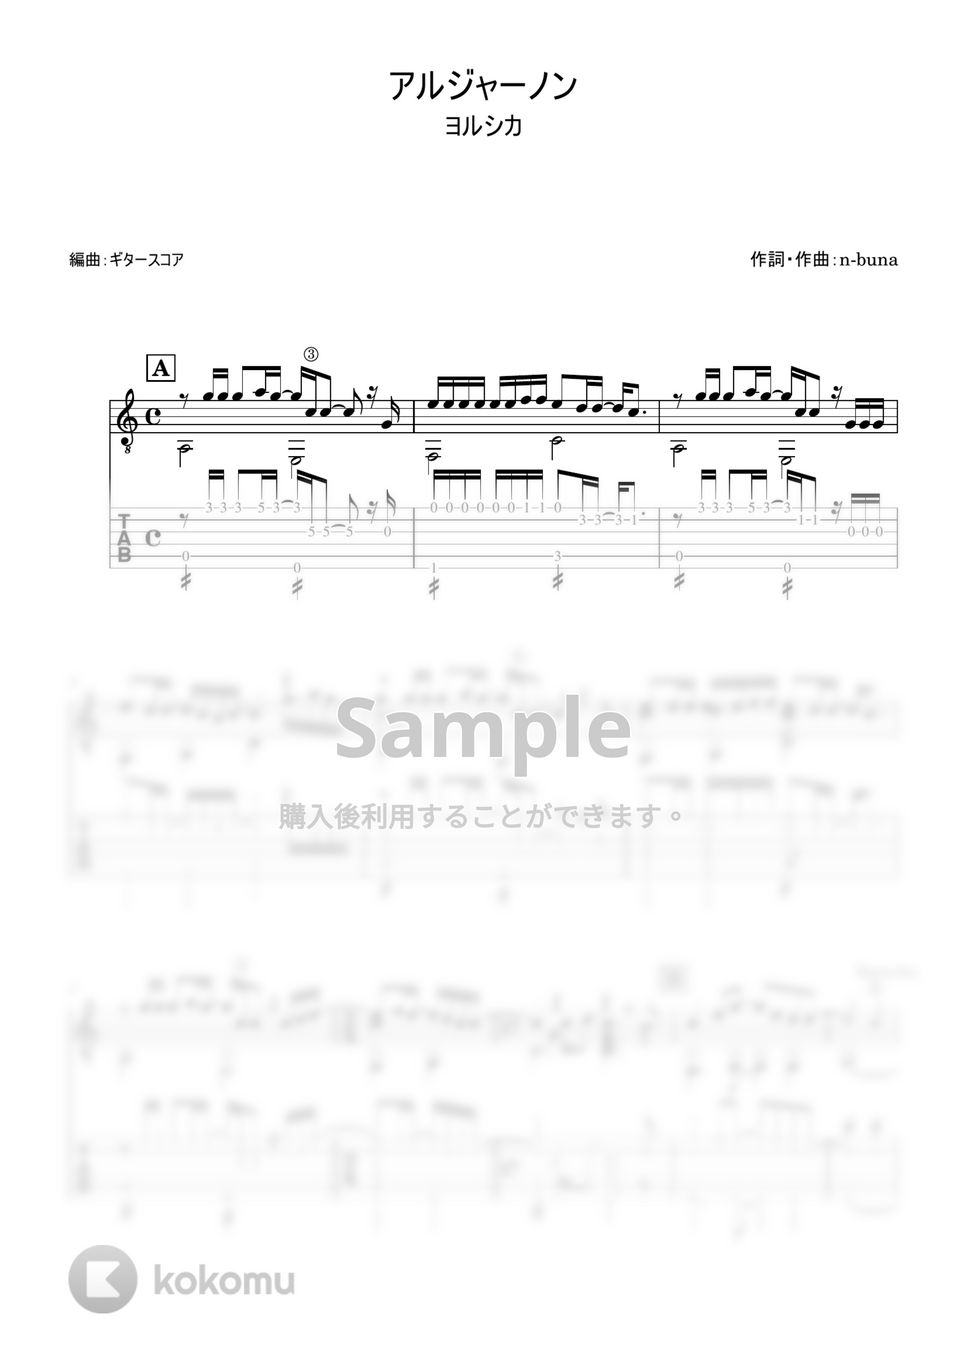 ヨルシカ - アルジャーノン (ギター・ソロ用) by ギタースコア